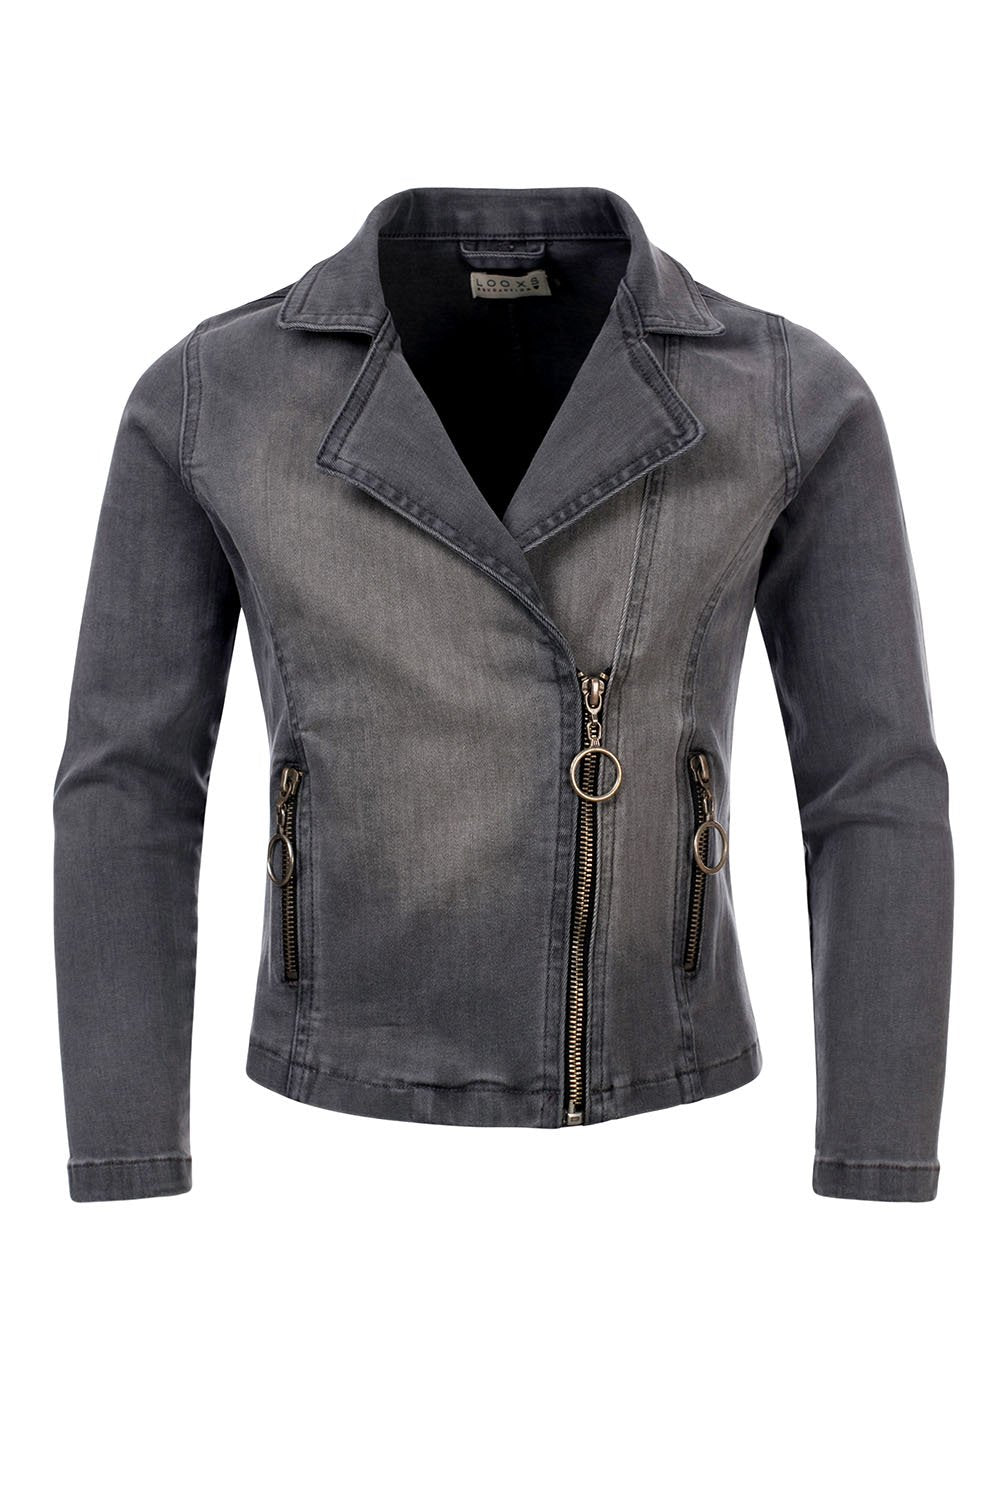 Meisjes Biker jacket soft grey van LOOXS 10sixteen in de kleur SOFT GREY in maat 176.